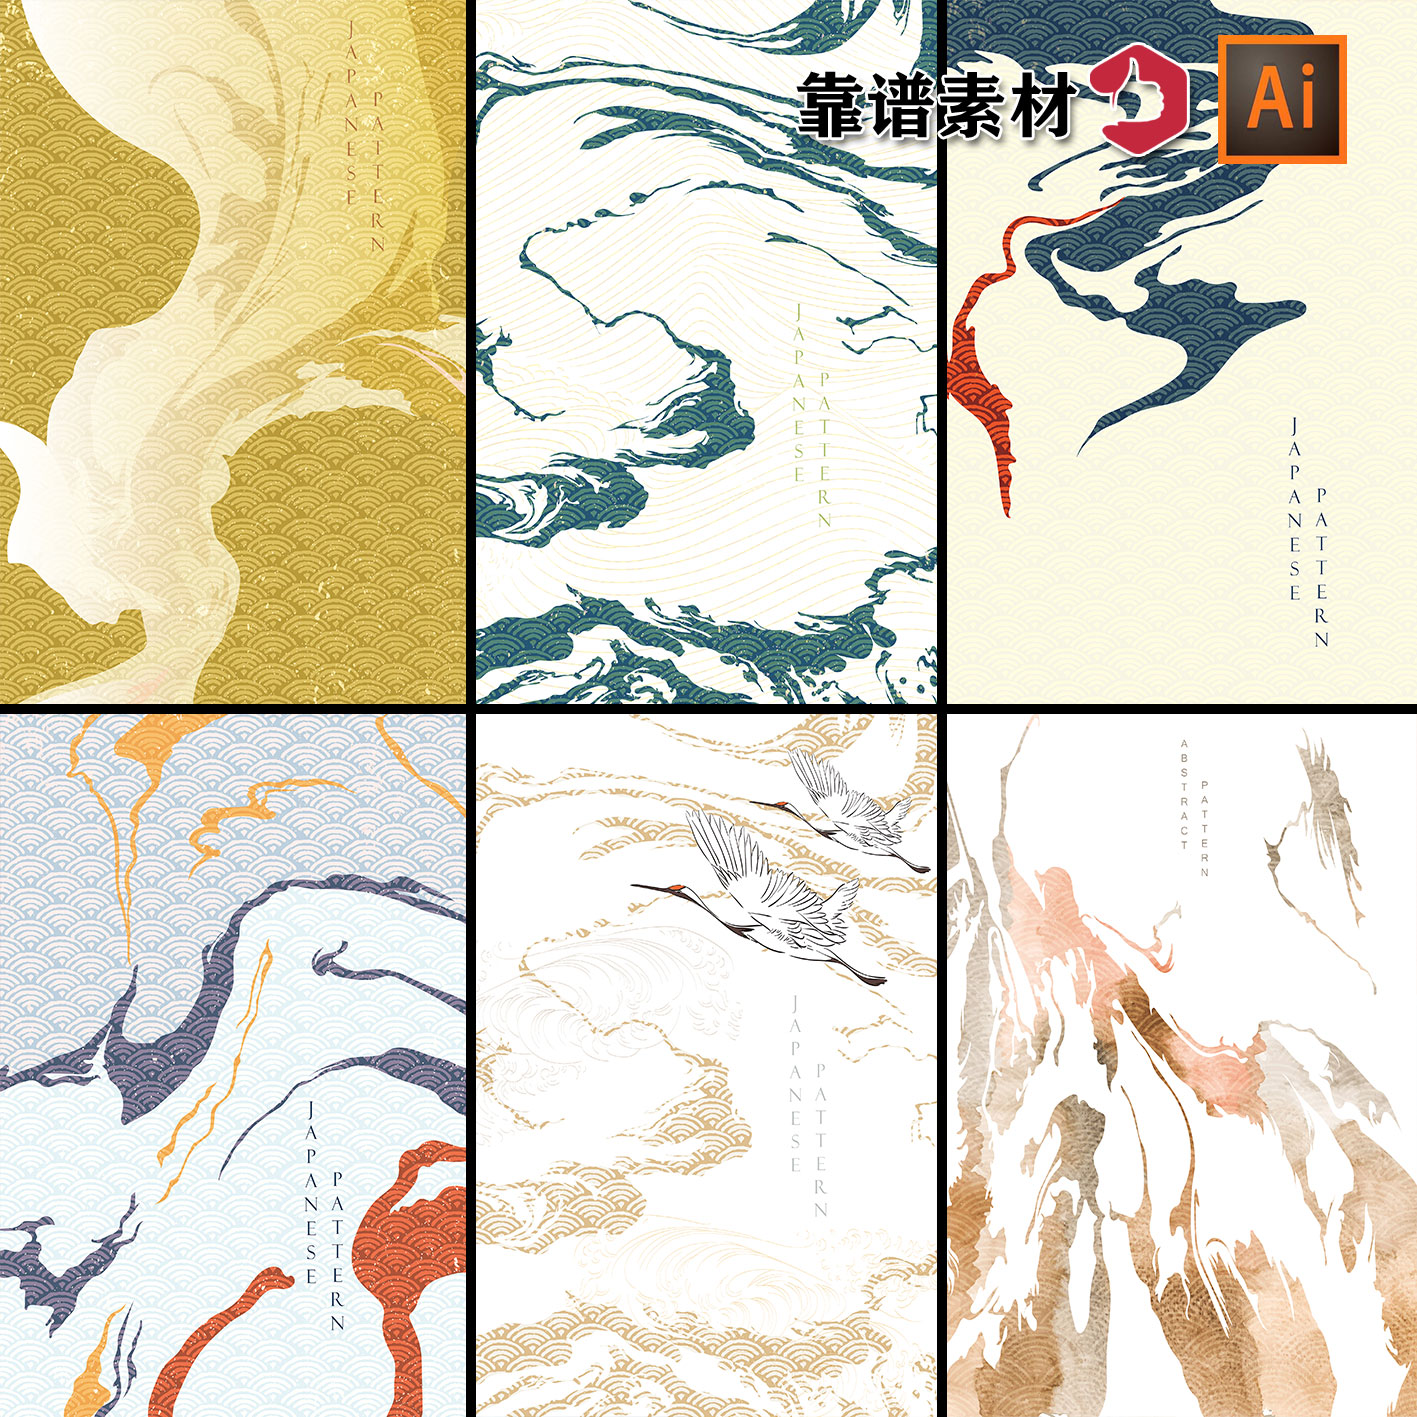 禅意流云抽象山水画水墨云纹意境传统中国风山水画AI矢量设计素材